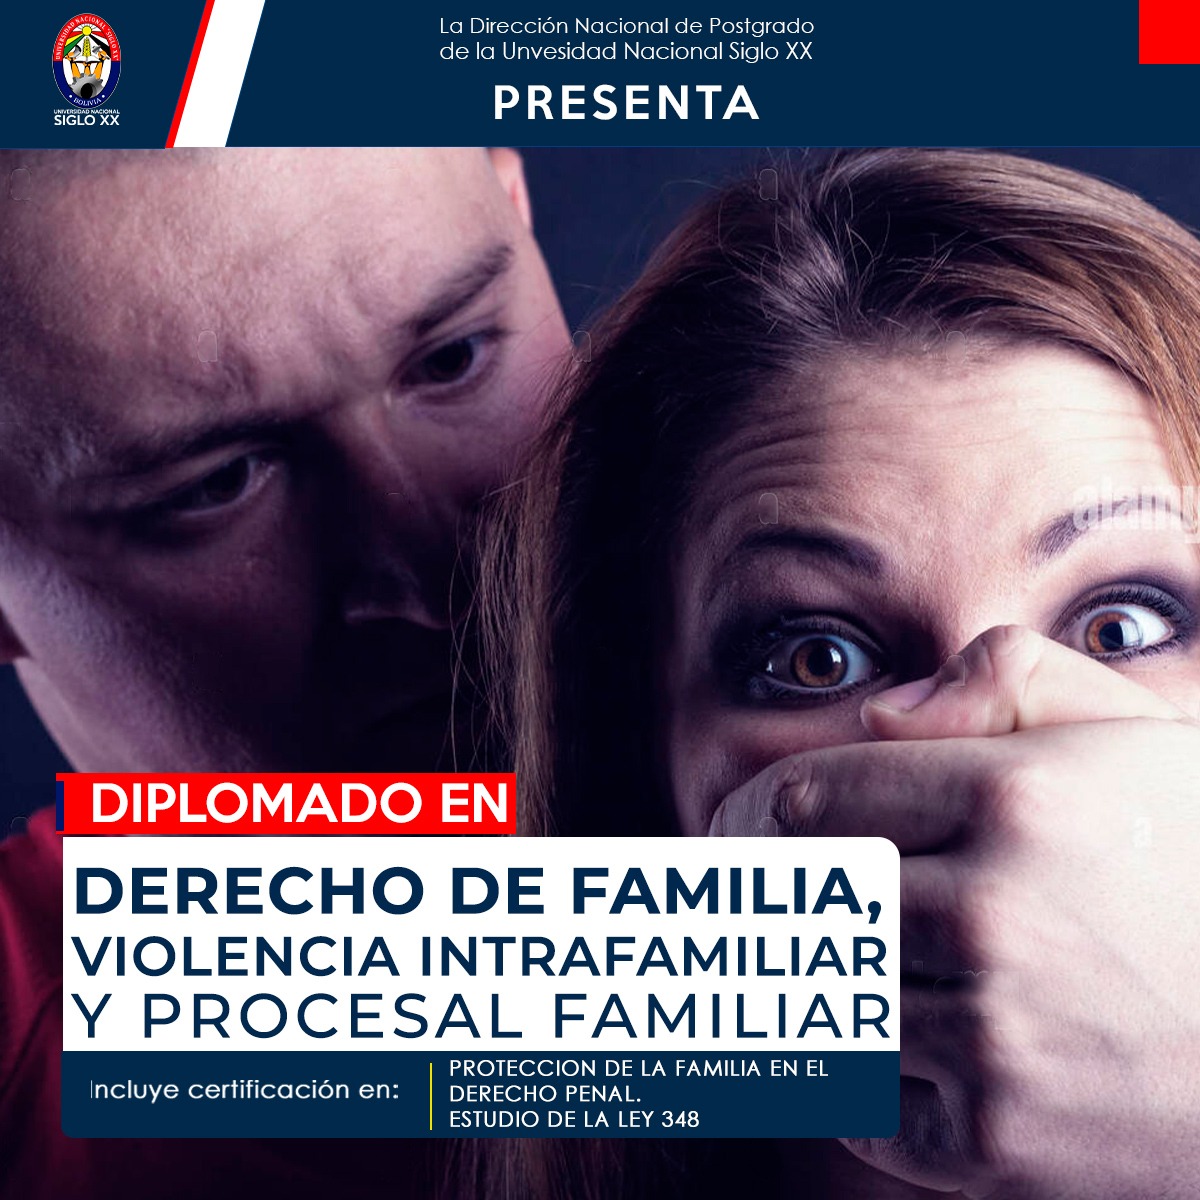 Diplomado DERECHO DE FAMILIA, VIOLENCIA INTRAFAMILIAR Y PROCESAL FAMILIAR